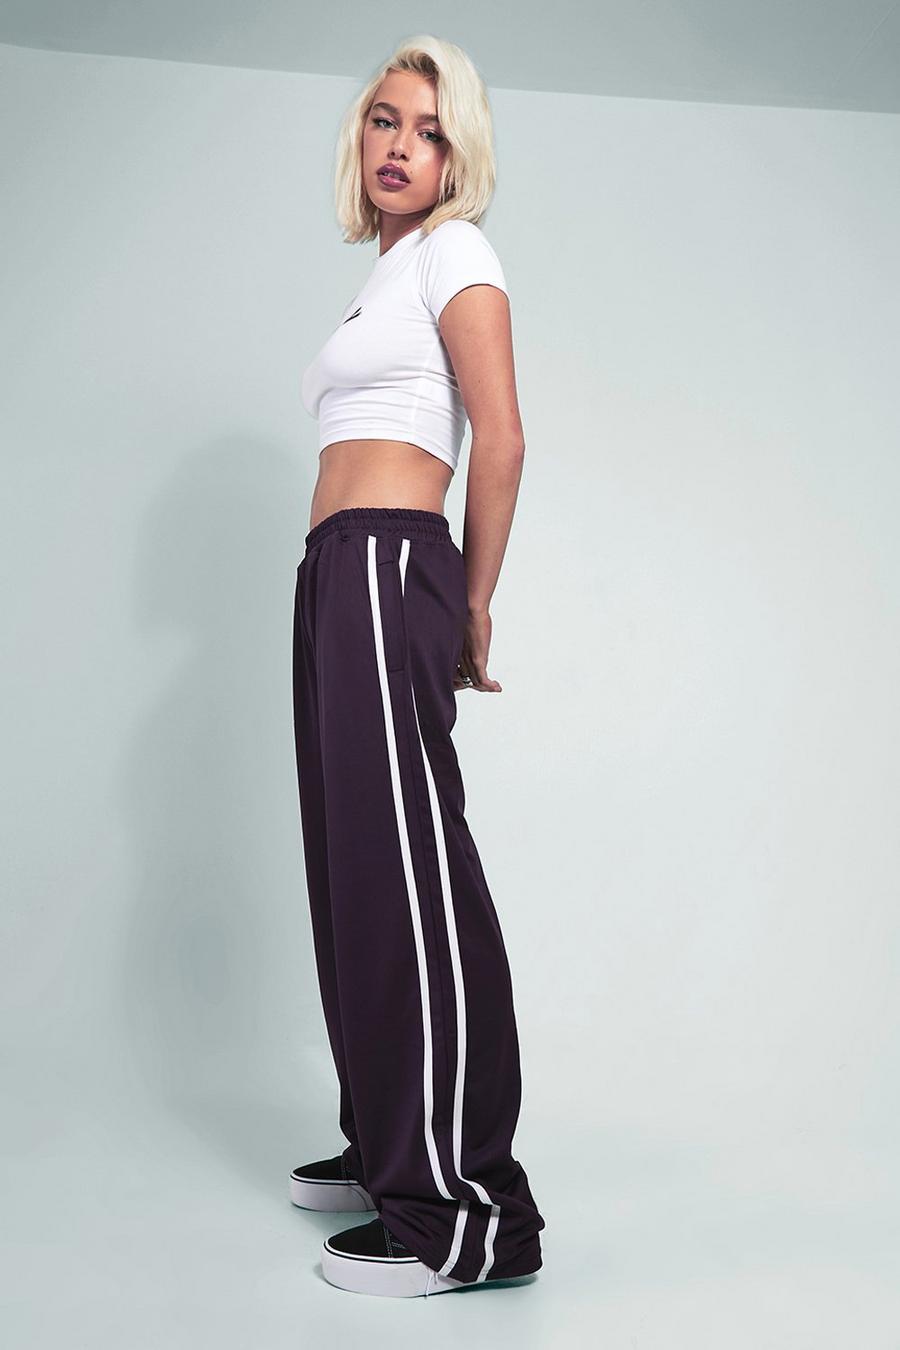 Kourtney Kardashian Barker - Jogginghose mit weitem Bein, Purple violet